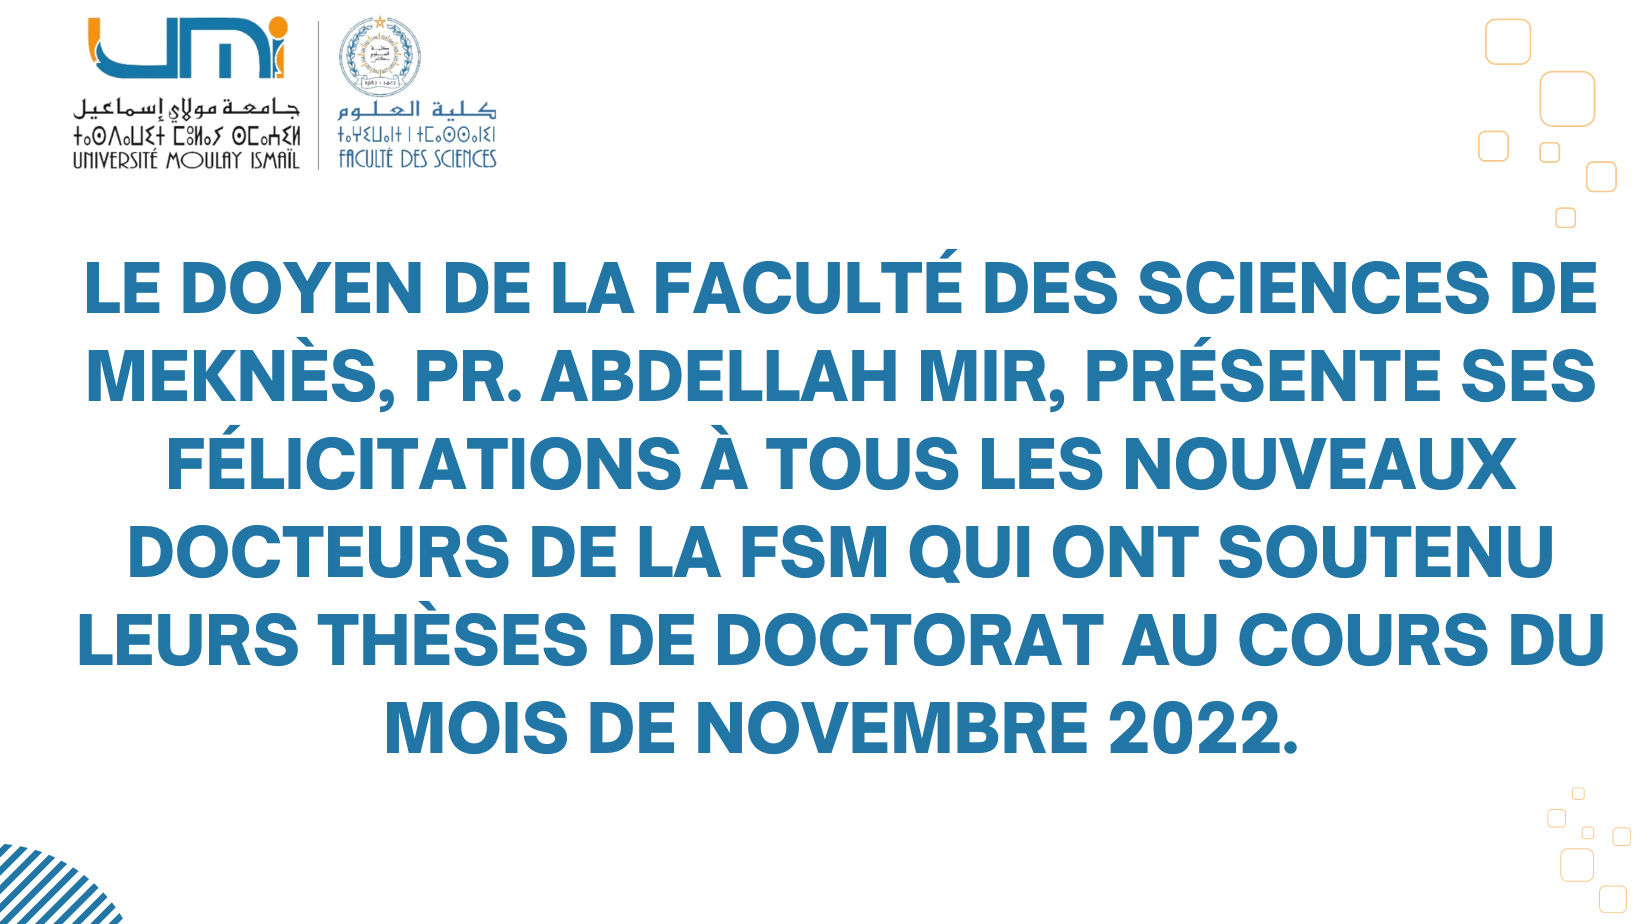 Lire la suite à propos de l’article Le Doyen de la Faculté des Sciences de Meknès, Pr. Abdellah MIR, présente ses félicitations à tous les nouveaux docteurs de la FSM qui ont soutenu leurs thèses de Doctorat au cours du mois de novembre 2022.